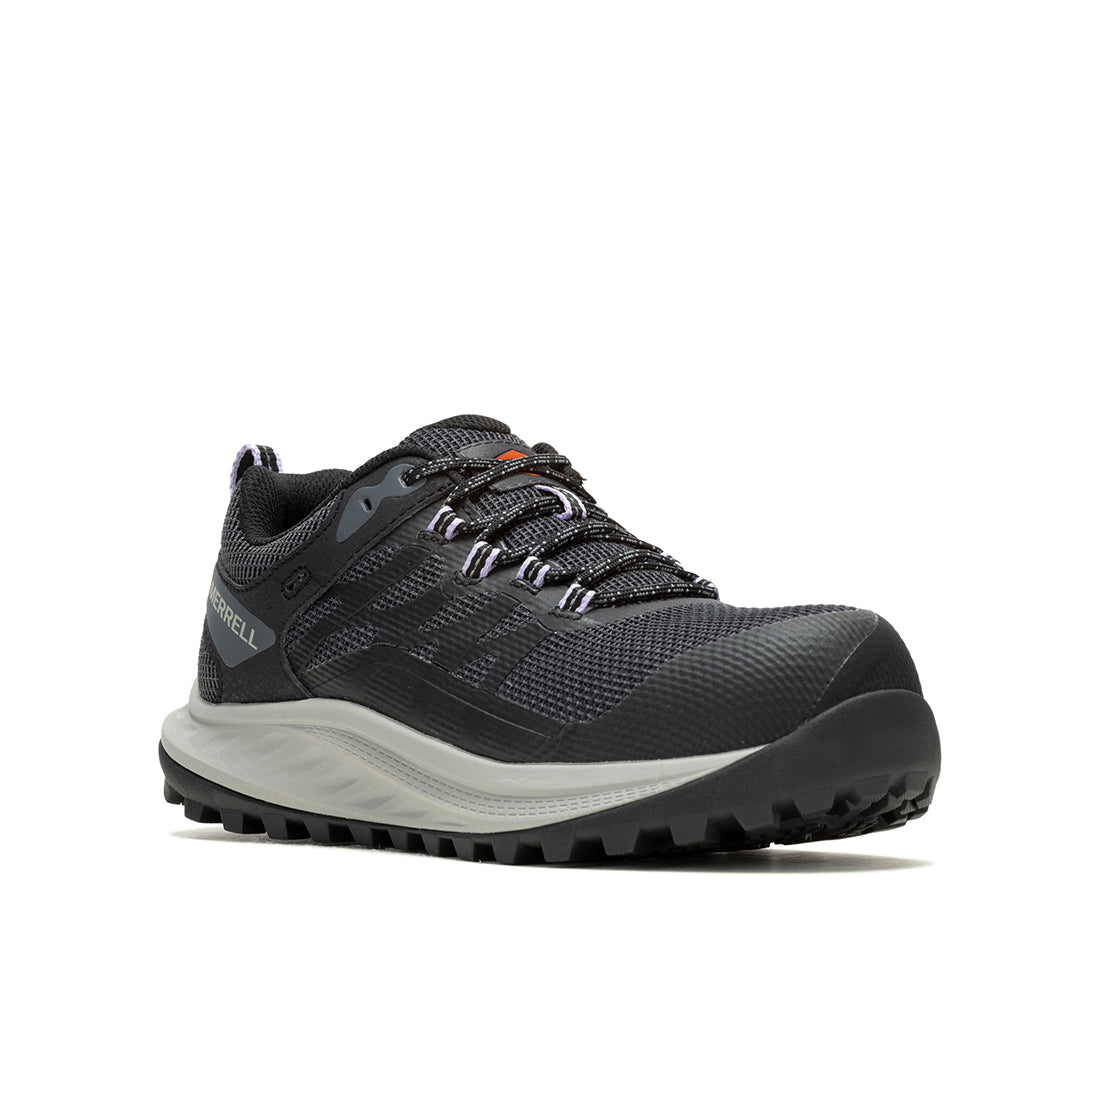 Antora 3 Cf – Black Ladies’ Work & Tactical Shoes - 0